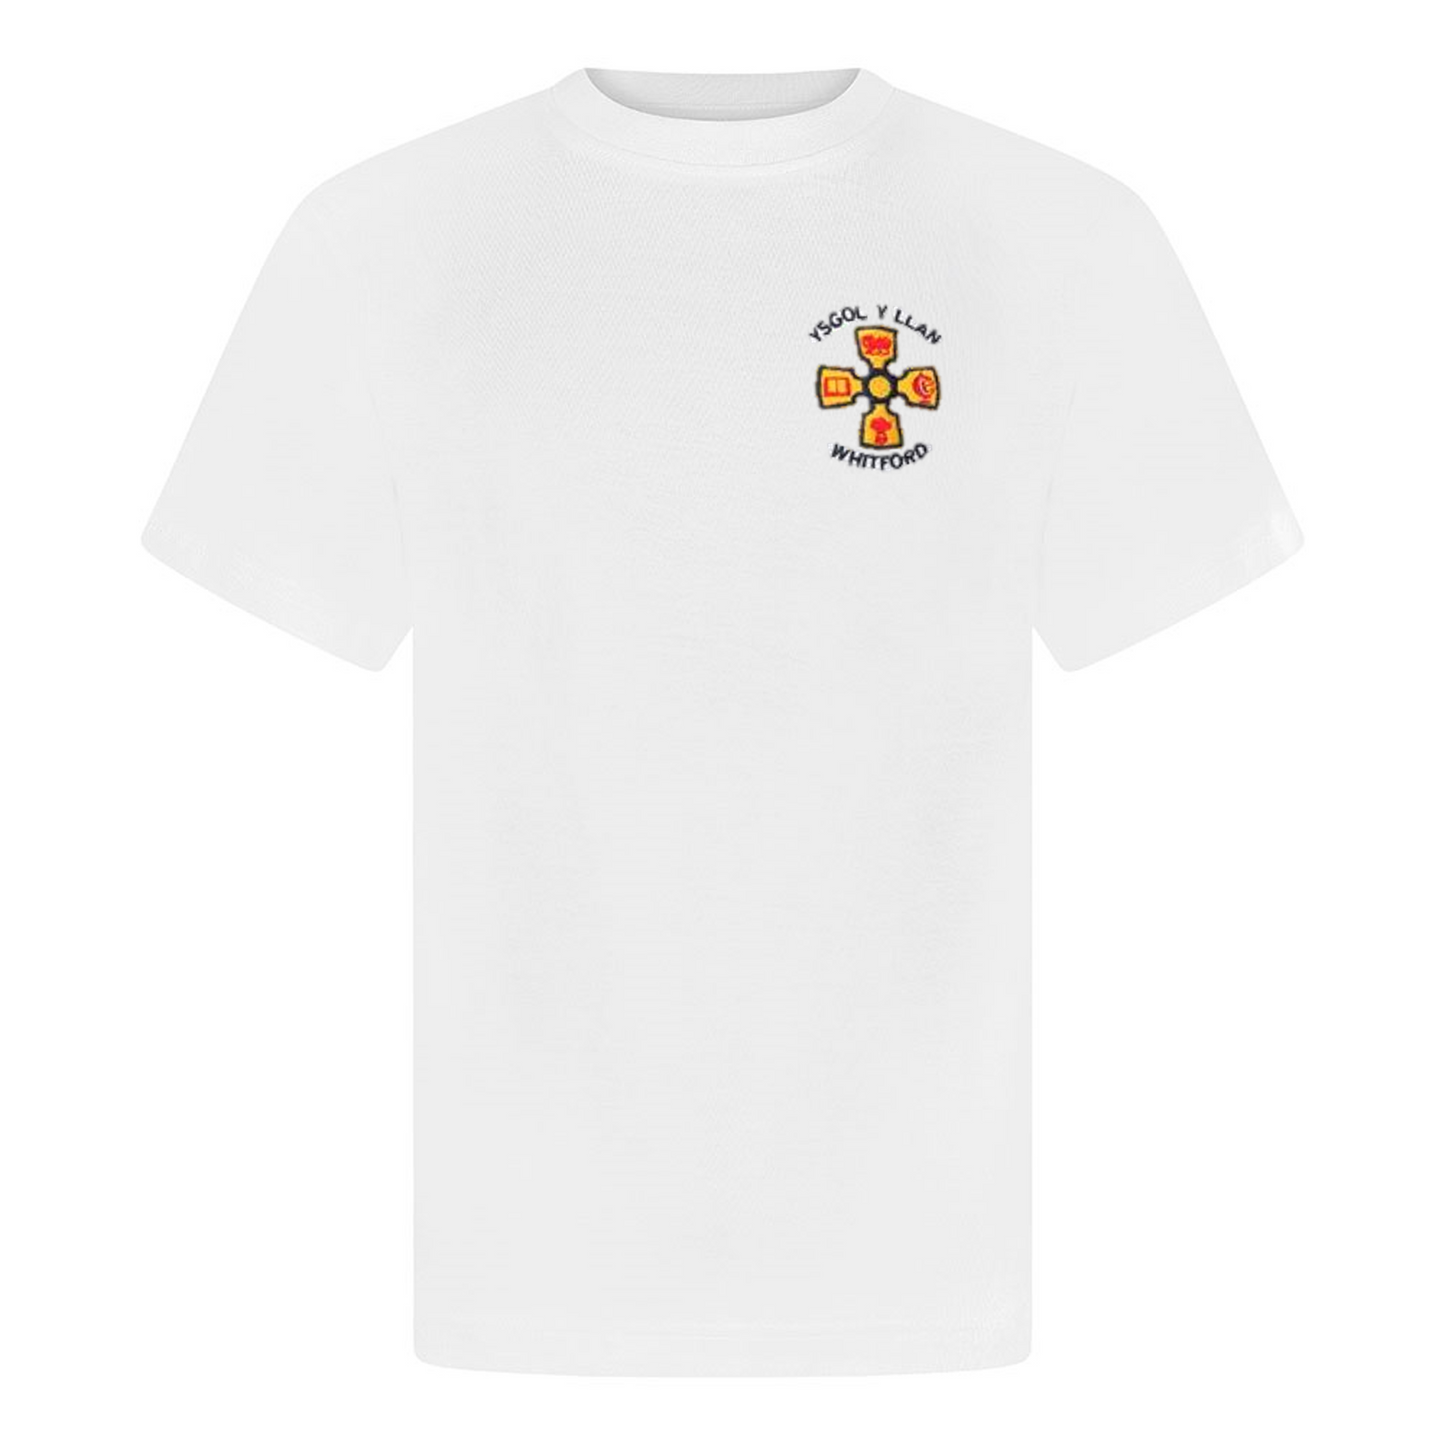 Ysgol y Llan PE T-Shirt